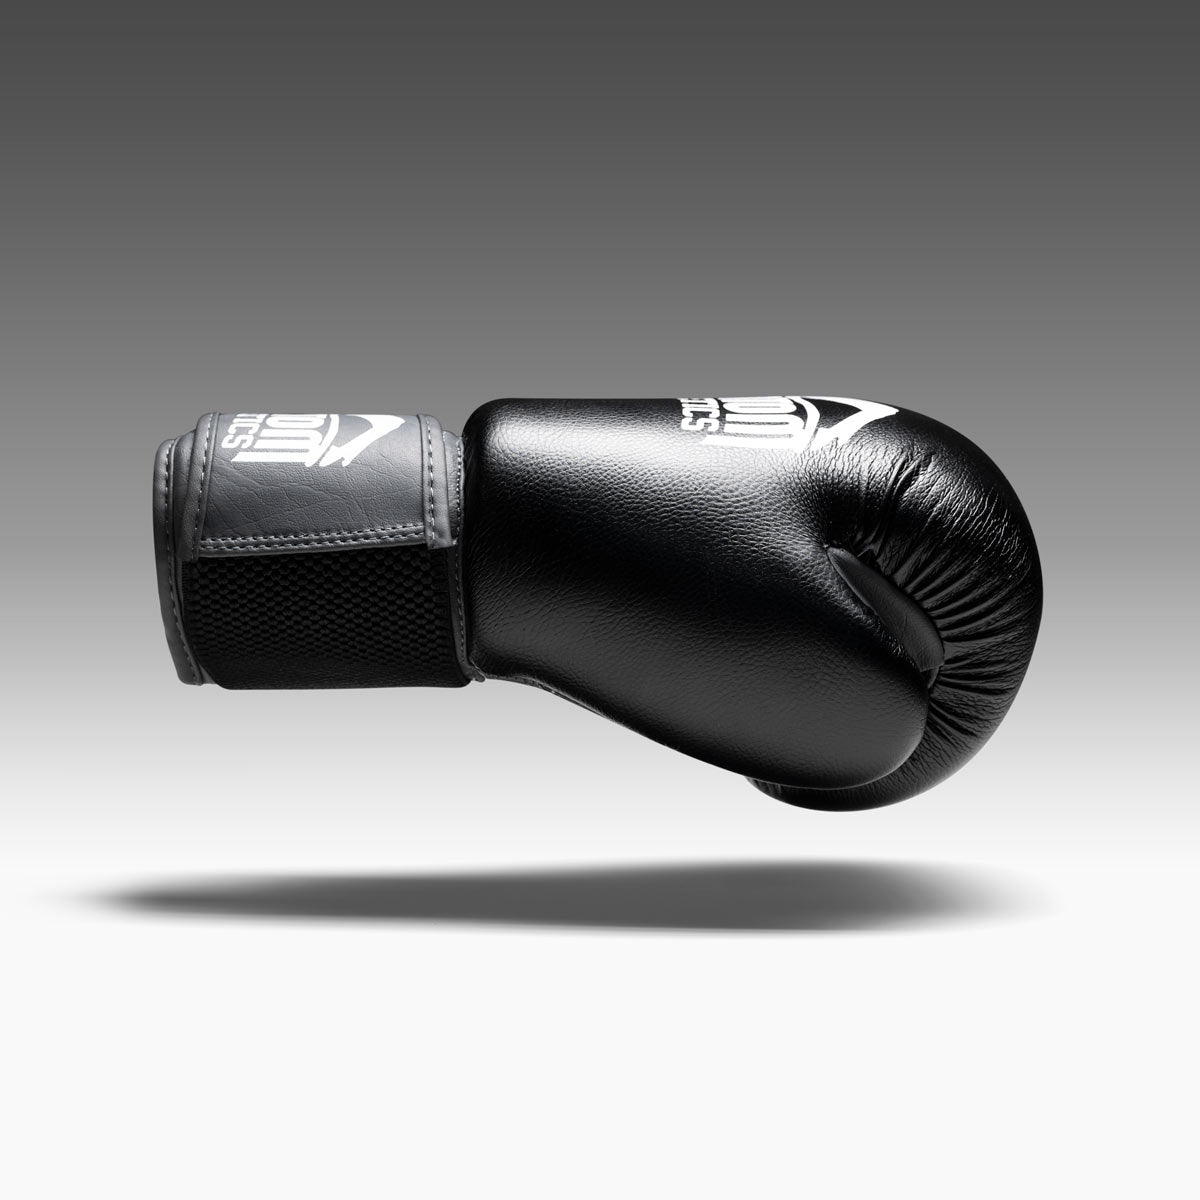 Der Phantom Ultra Boxhandschuh verfügt über eine perfekte Passform für maximalen Komfort in Training und Wettkampf.